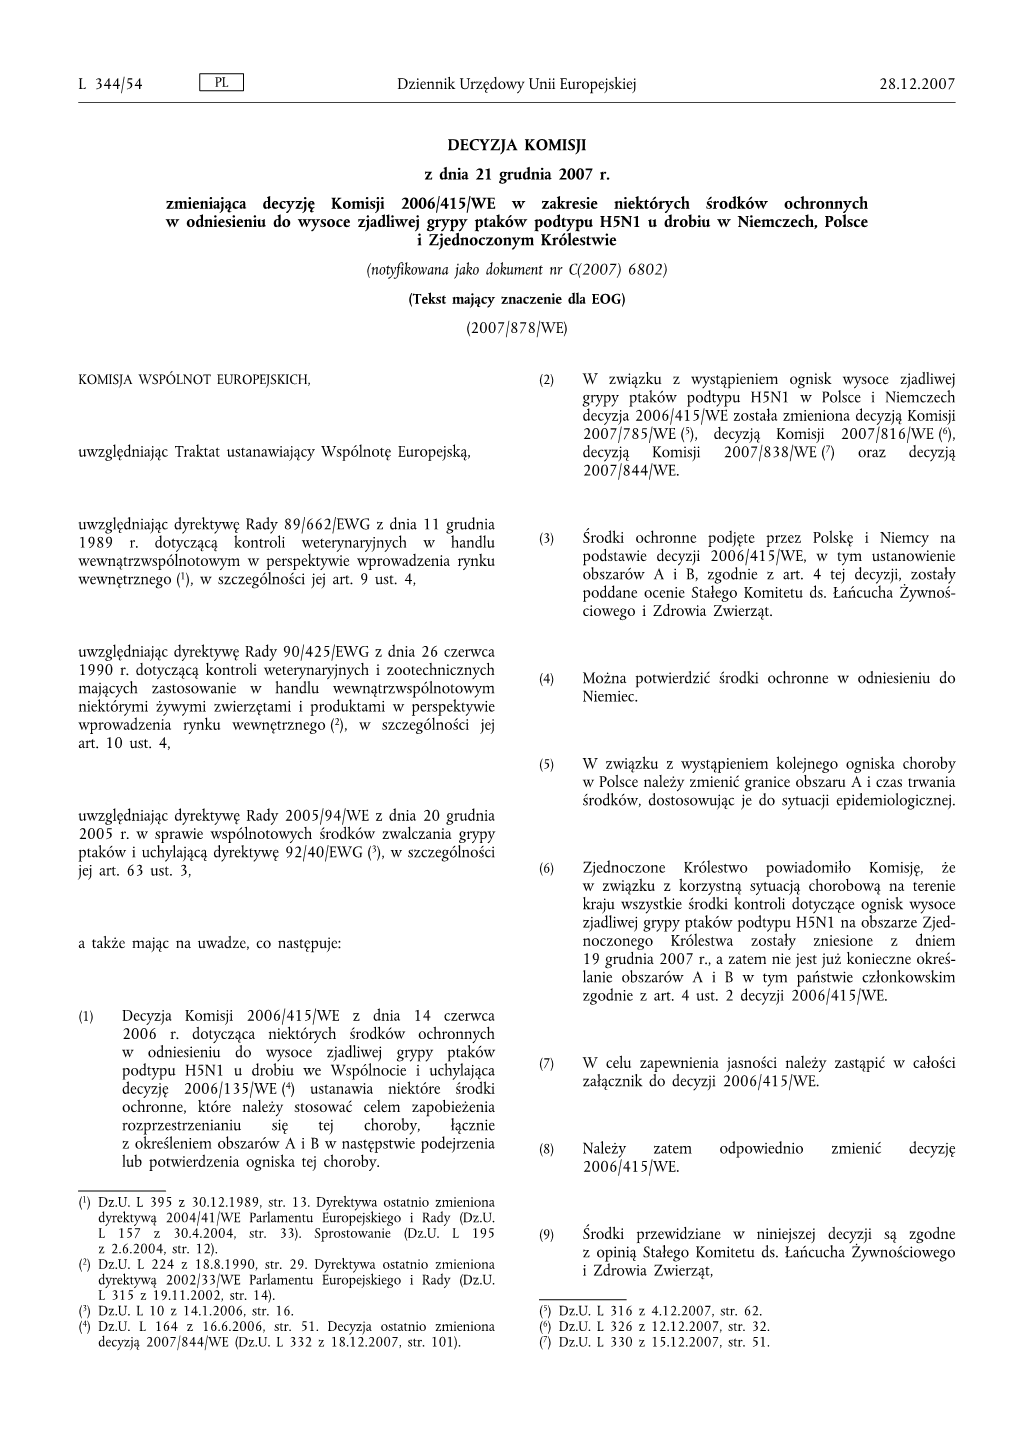 DECYZJA KOMISJI Z Dnia 21 Grudnia 2007 R. Zmieniająca Decyzję Komisji